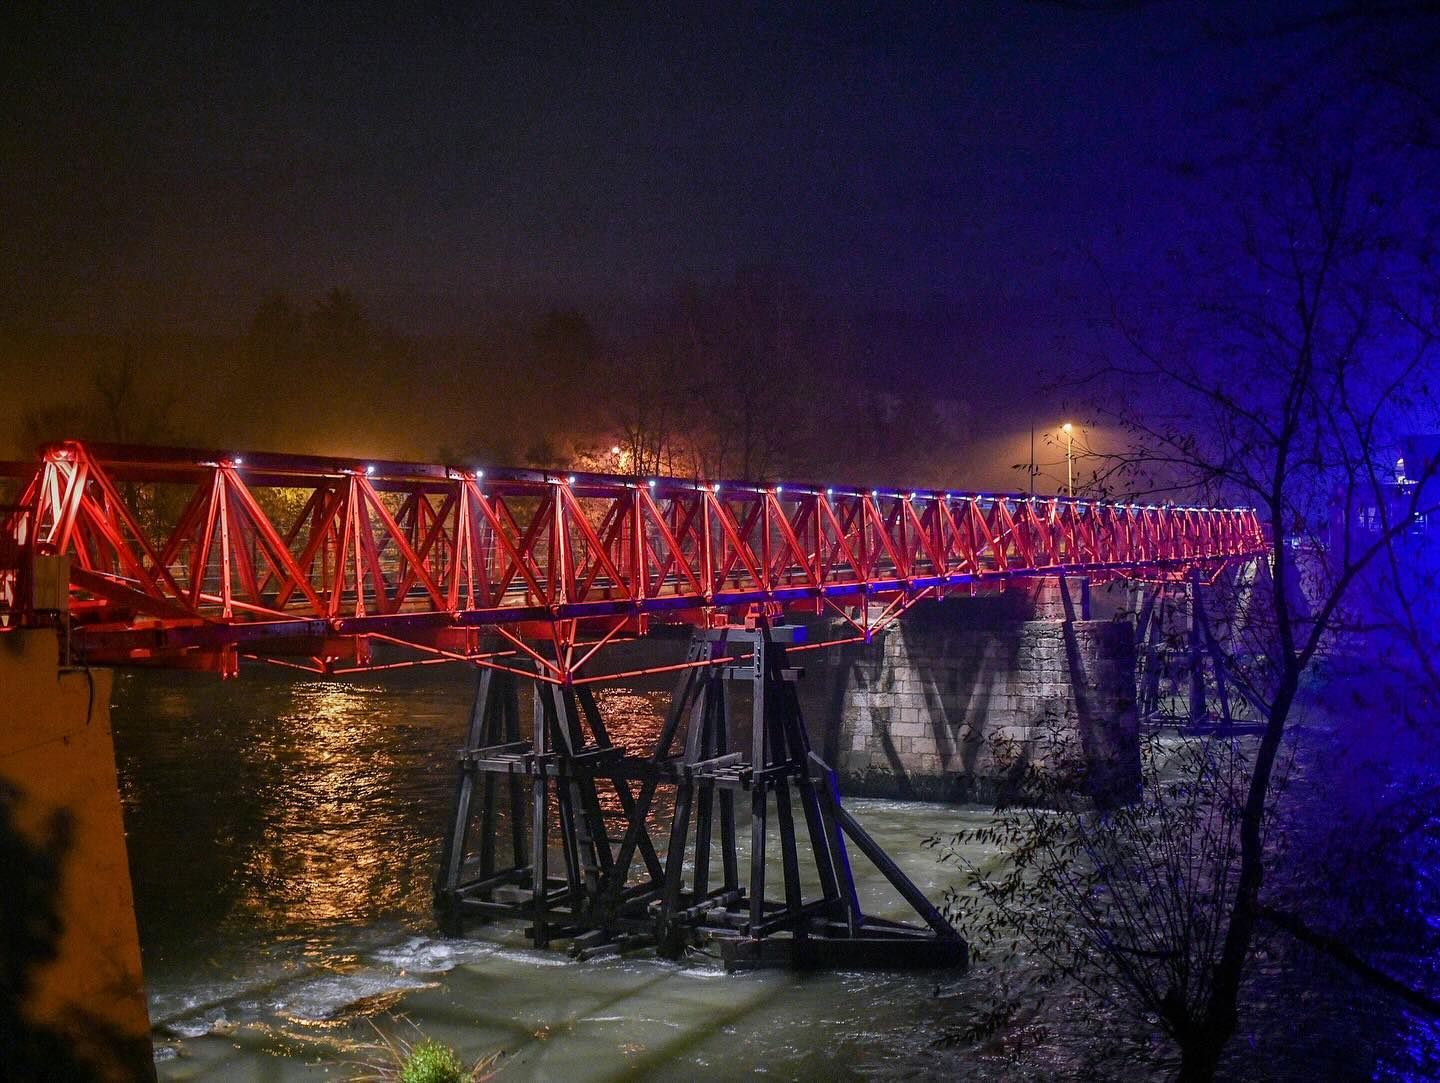 (FOTO) PO PRVI PUT OSVIJETLJEN Evo kako izgleda most u Trapistima po noći